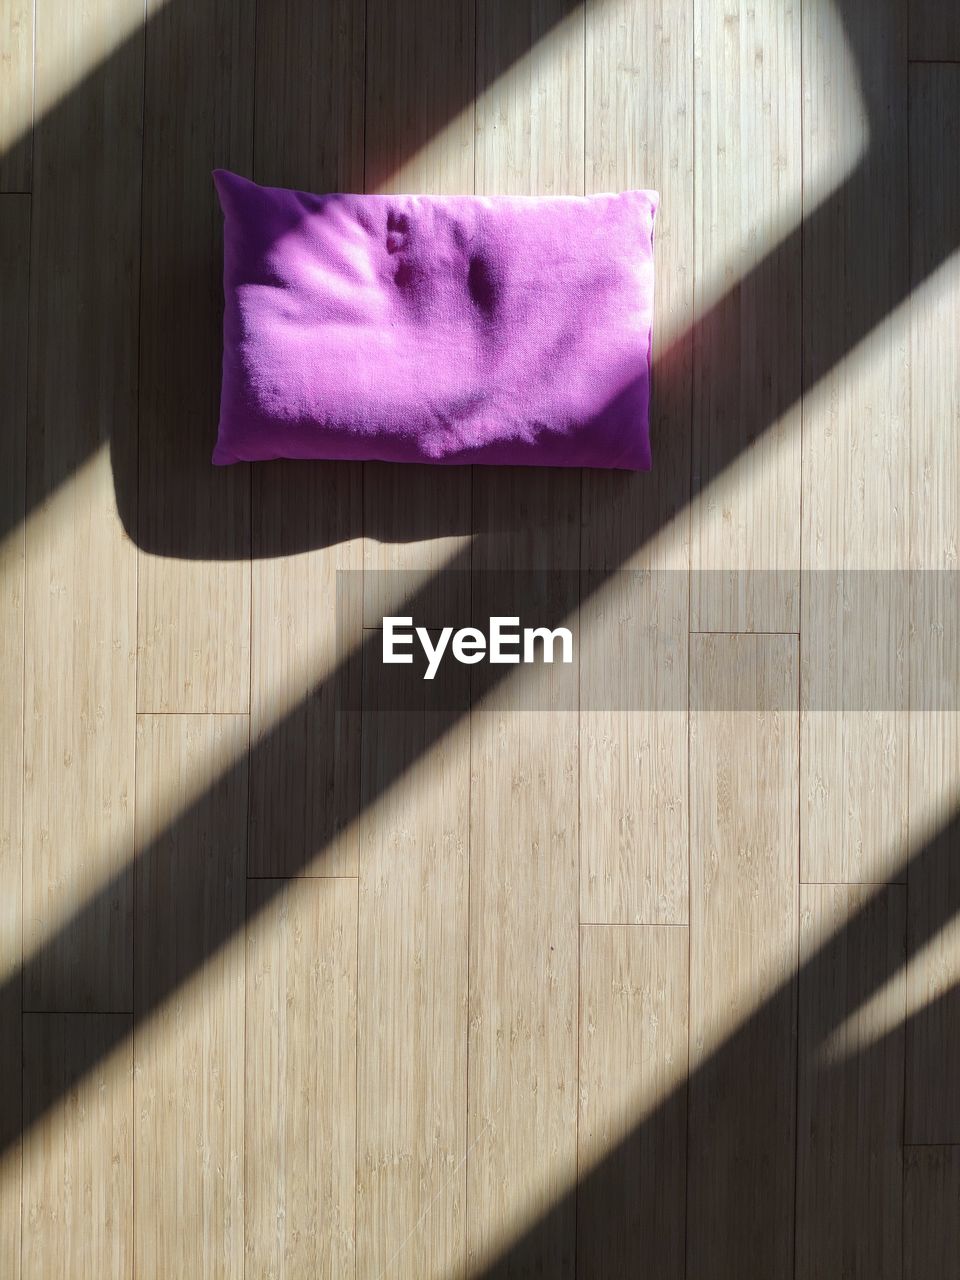 Purple cushion on hardwood floor